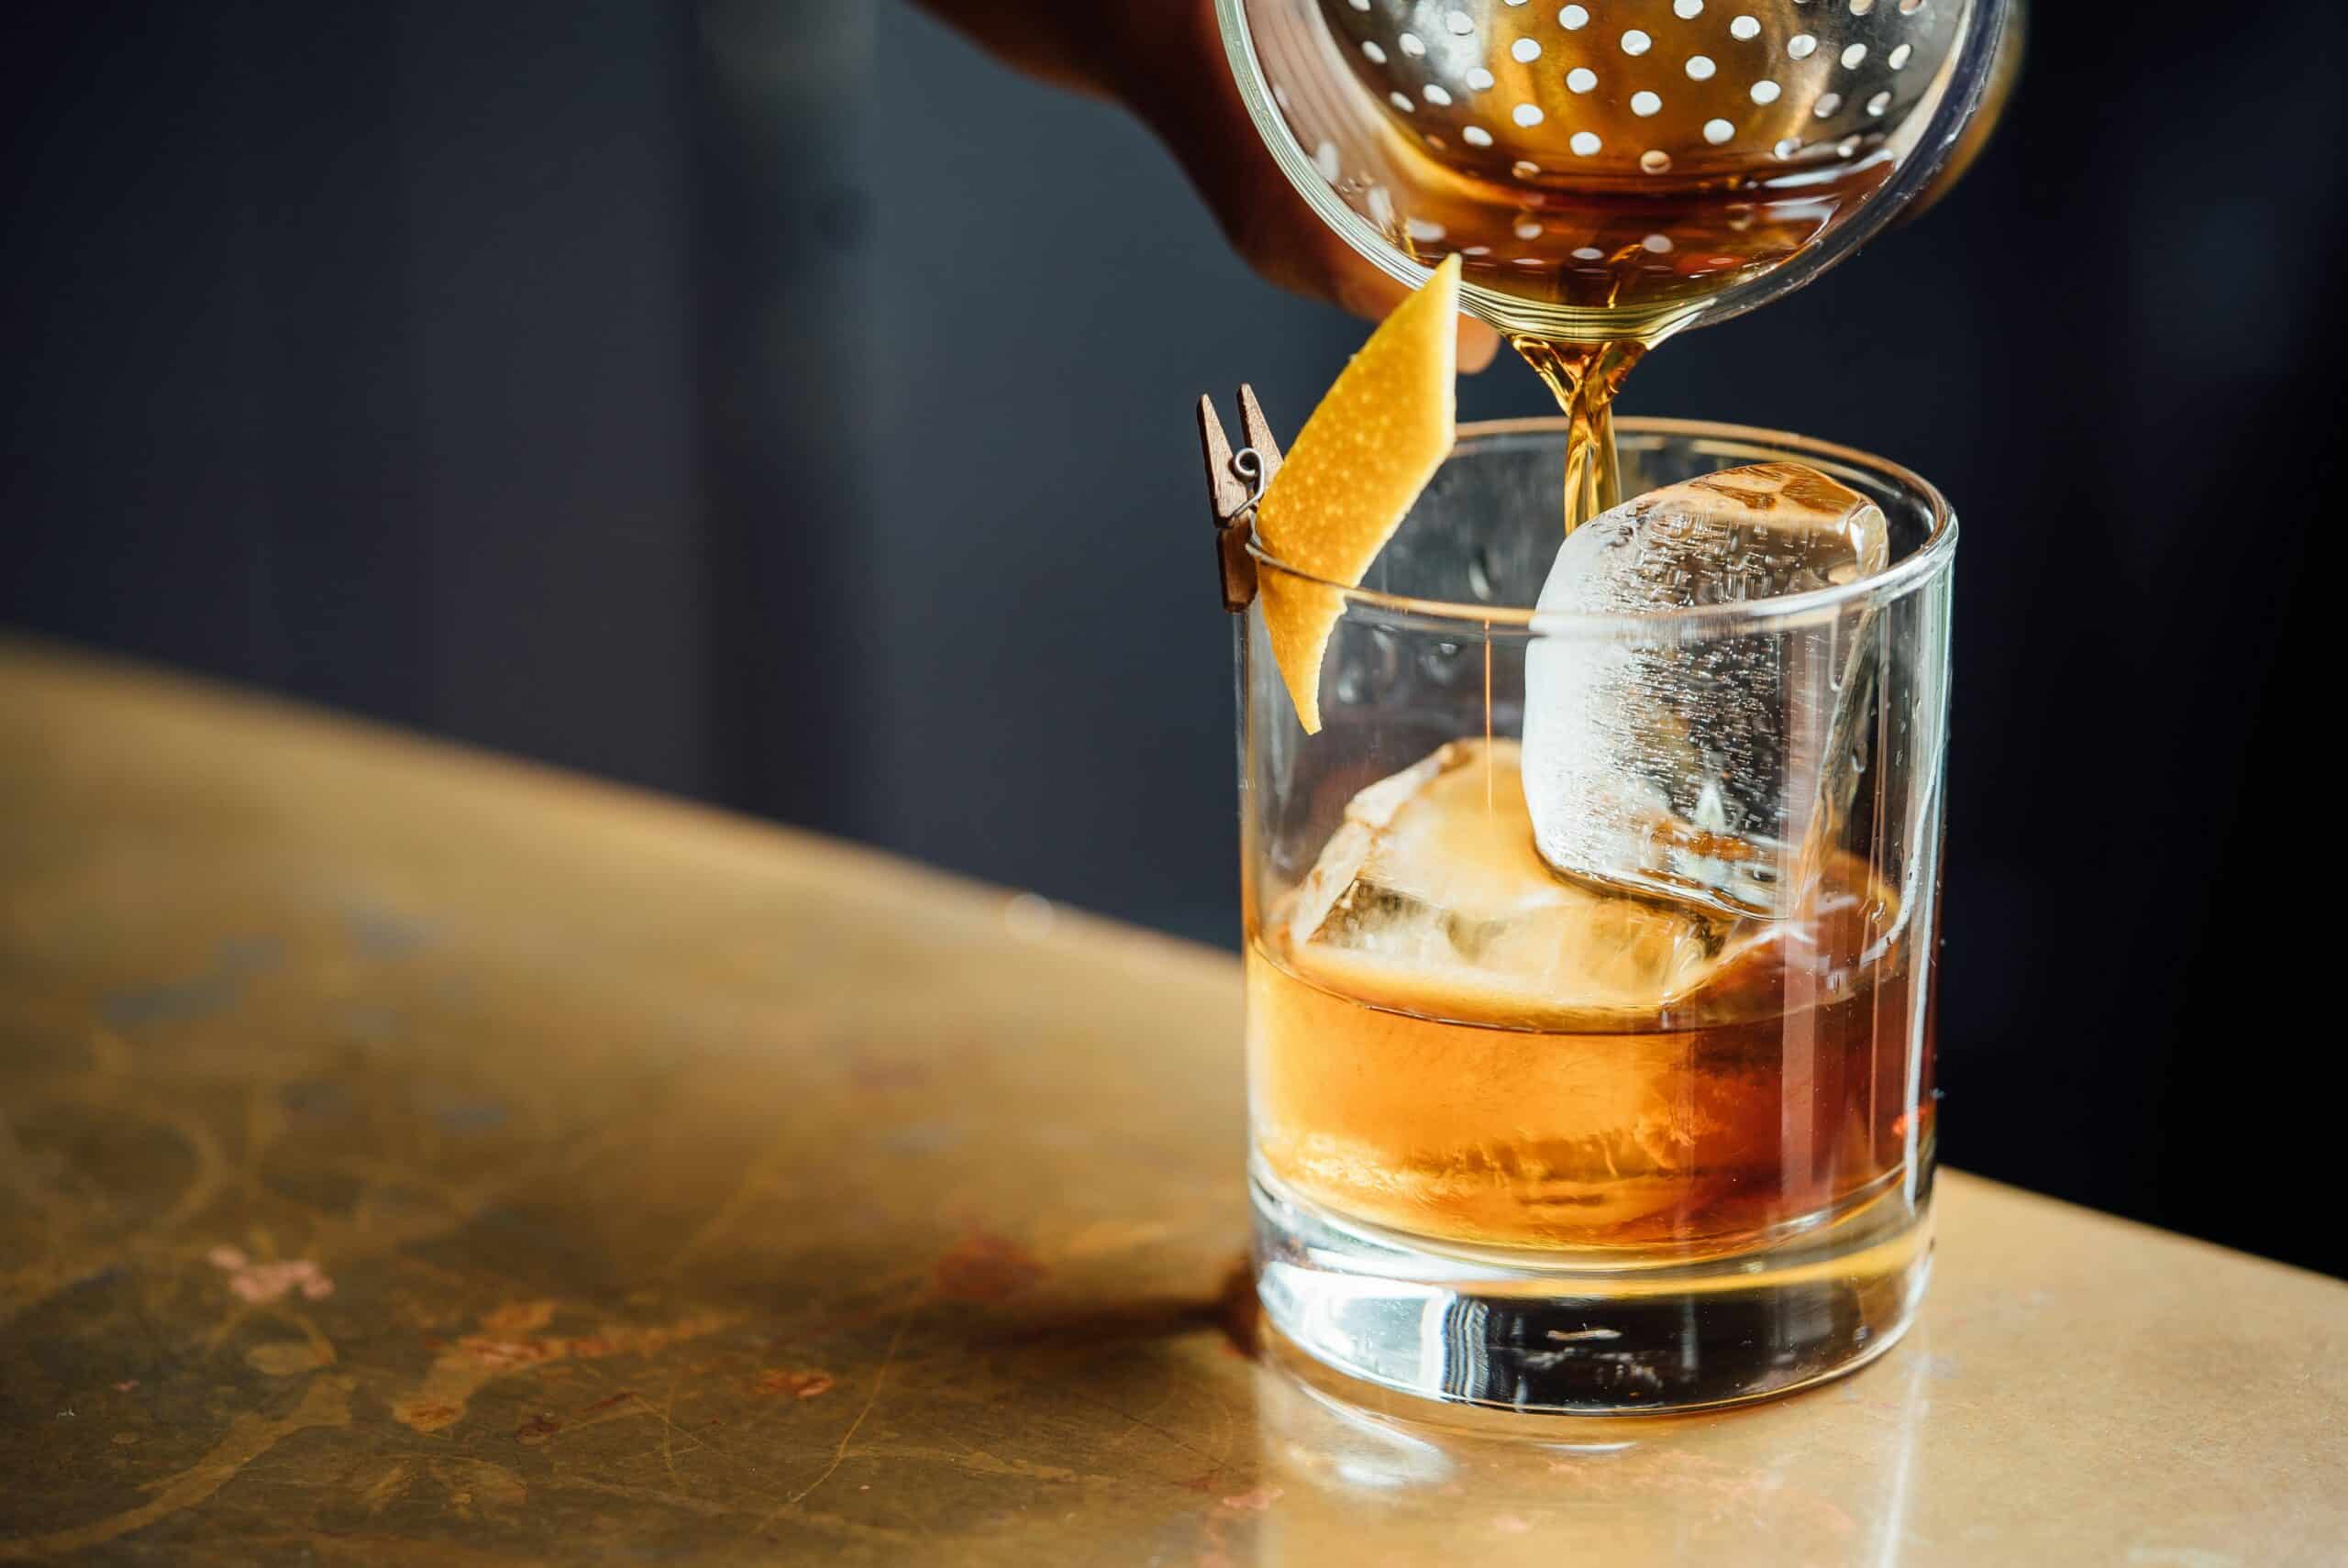 Celebra el Día del Whisky con estilo en estos bares